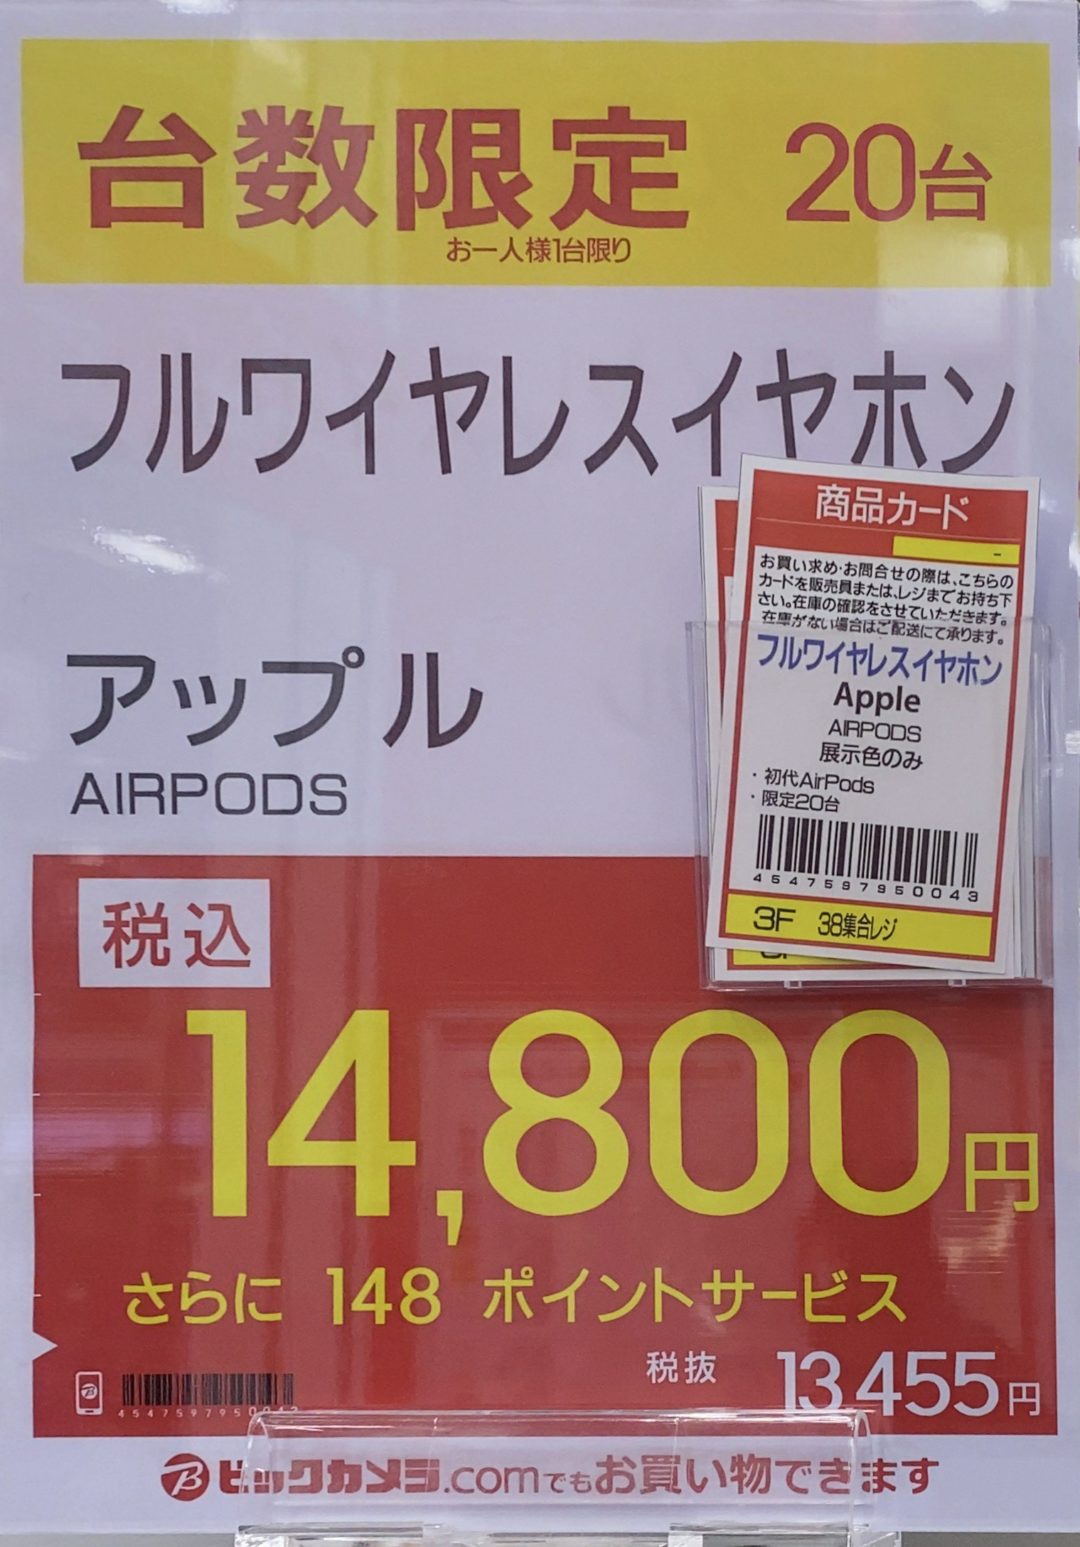 ラゾーナ川崎のビックカメラで初代AirPodsが台数限定で14,800円、Apple 